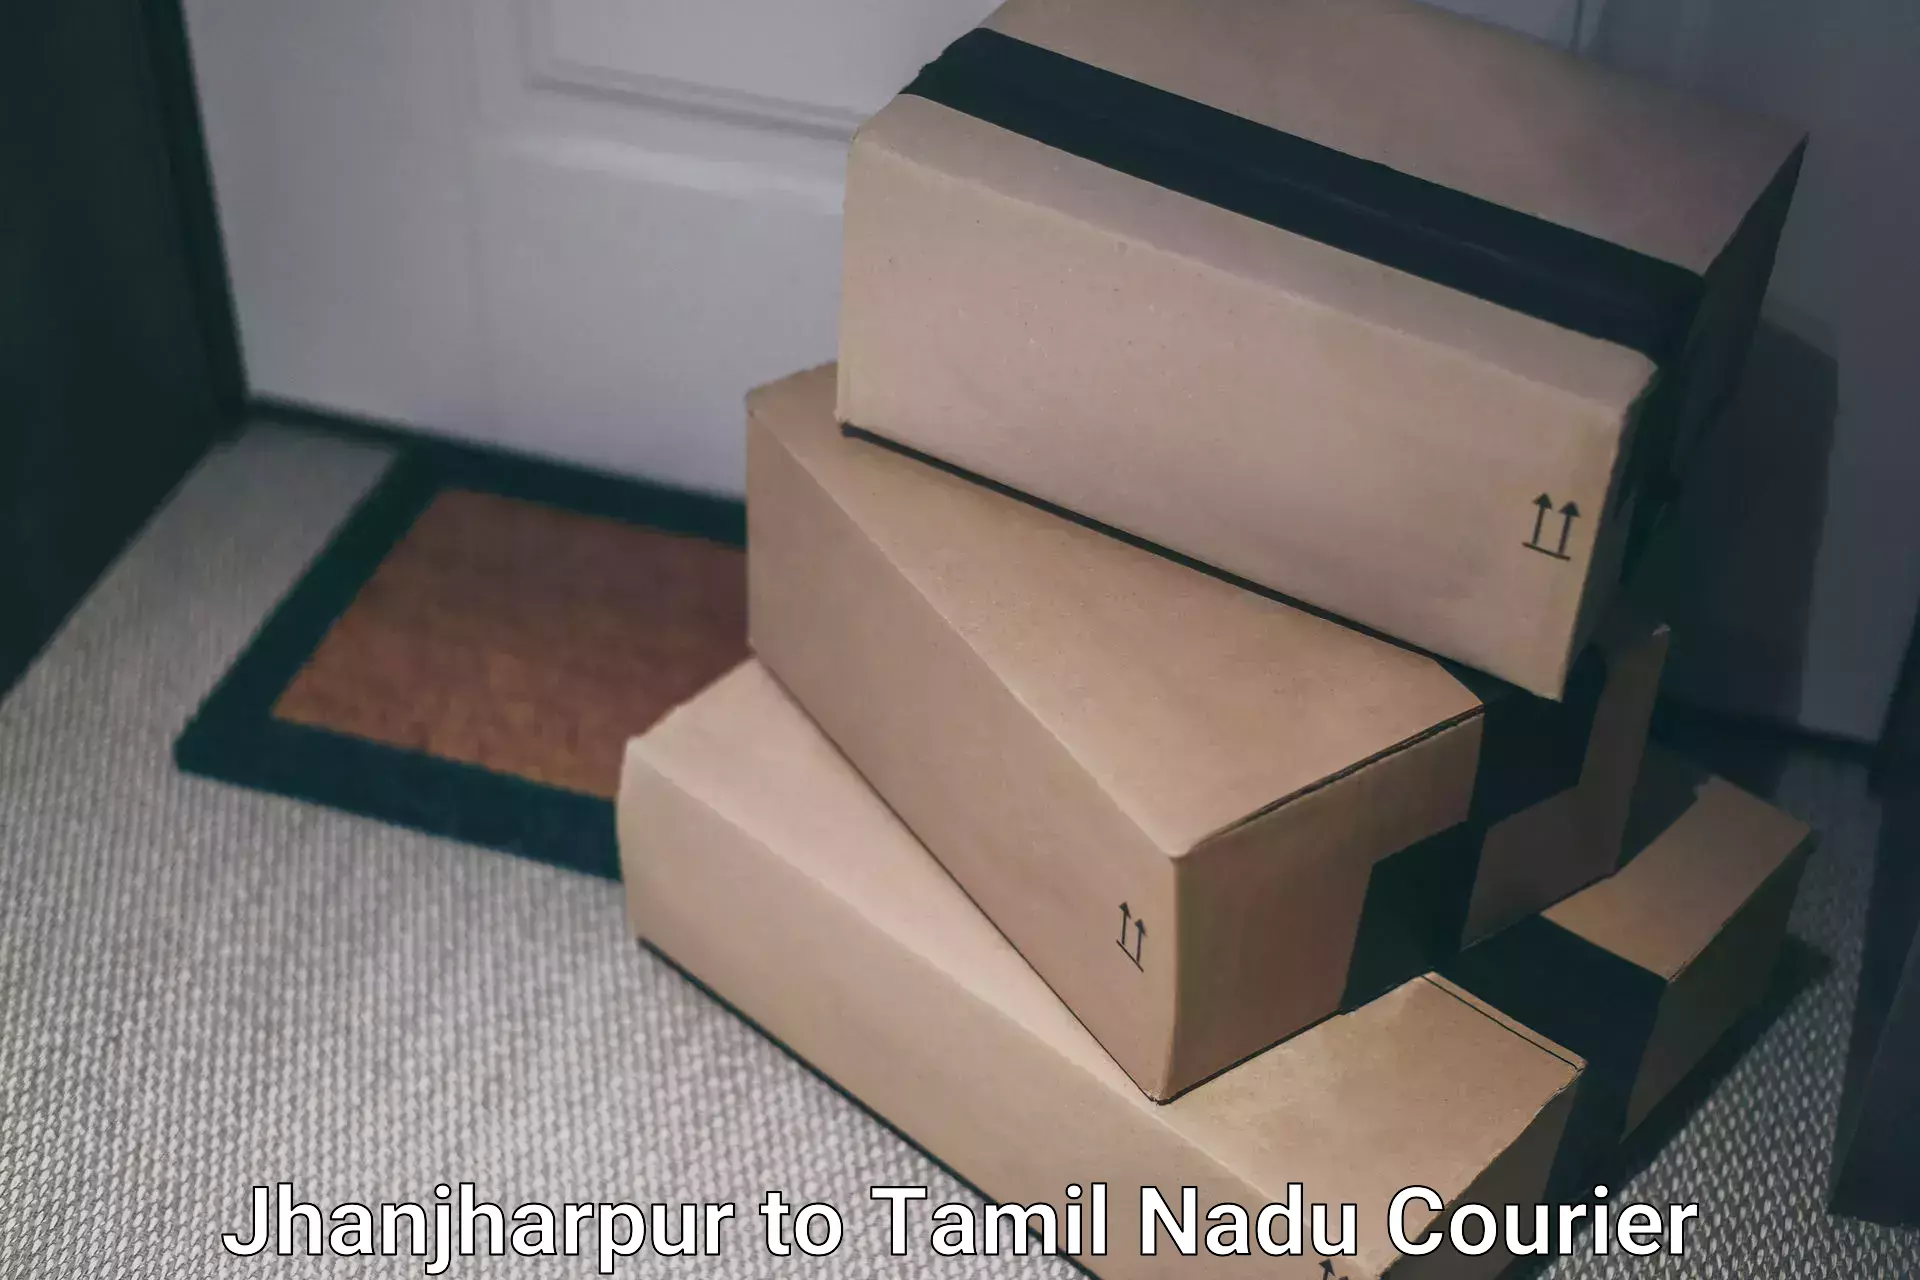 Regular parcel service Jhanjharpur to Tamil Nadu